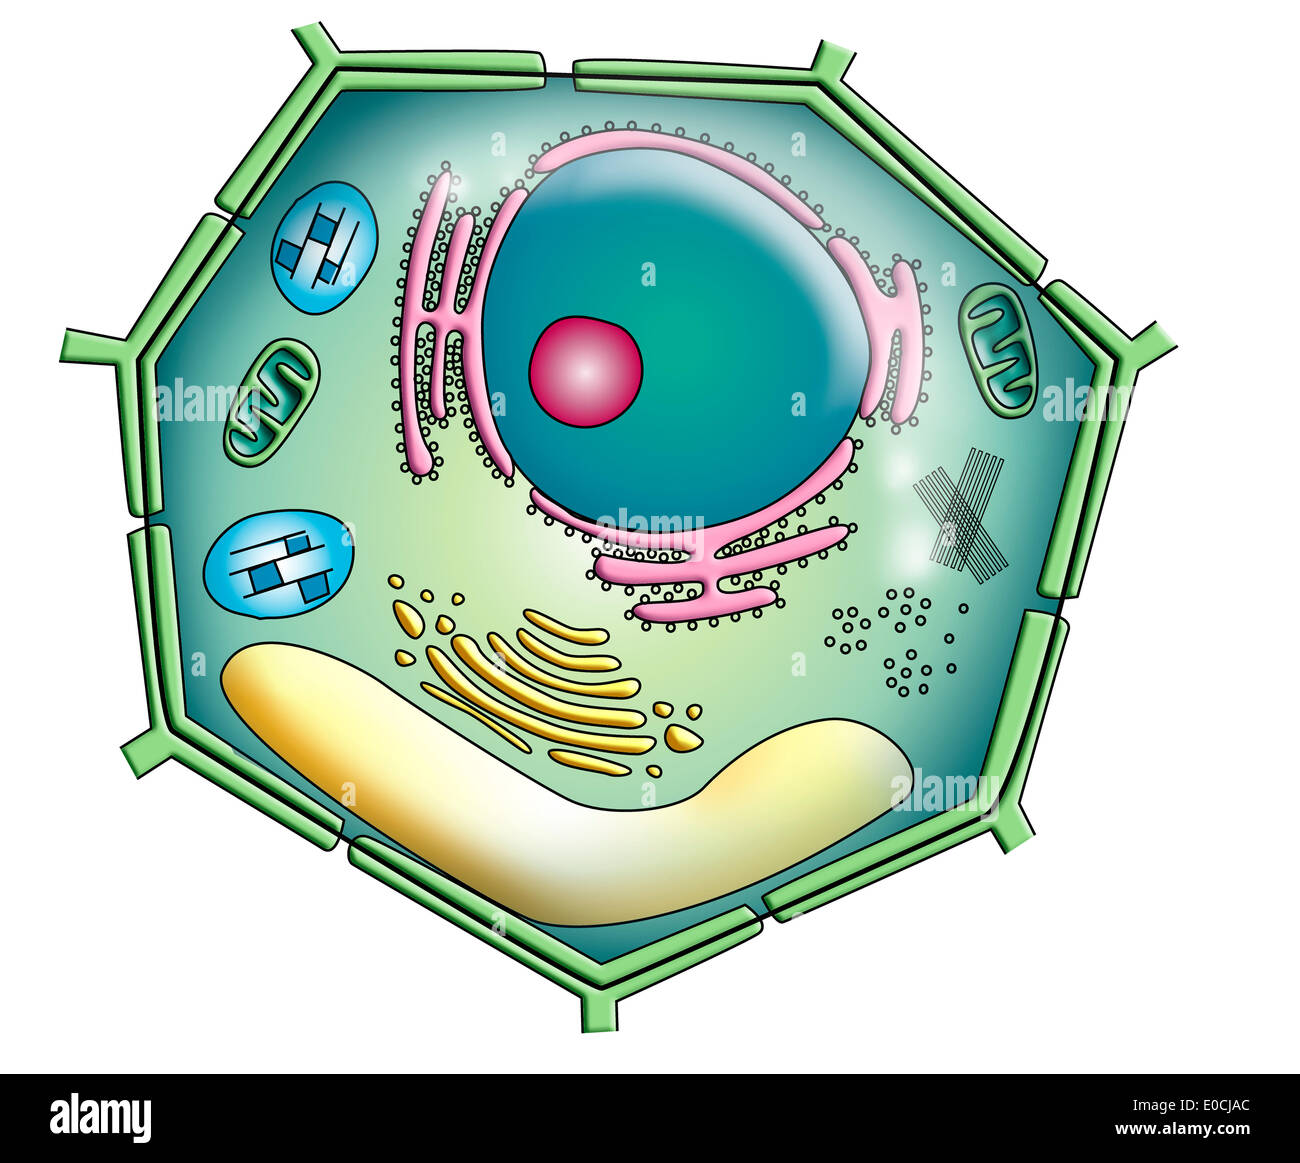 Клетка без цитоплазмы. Клетка растения на белом фоне. Биологическая клетка. Цитоплазма растительной клетки. Растительная клетка на прозрачном фоне.